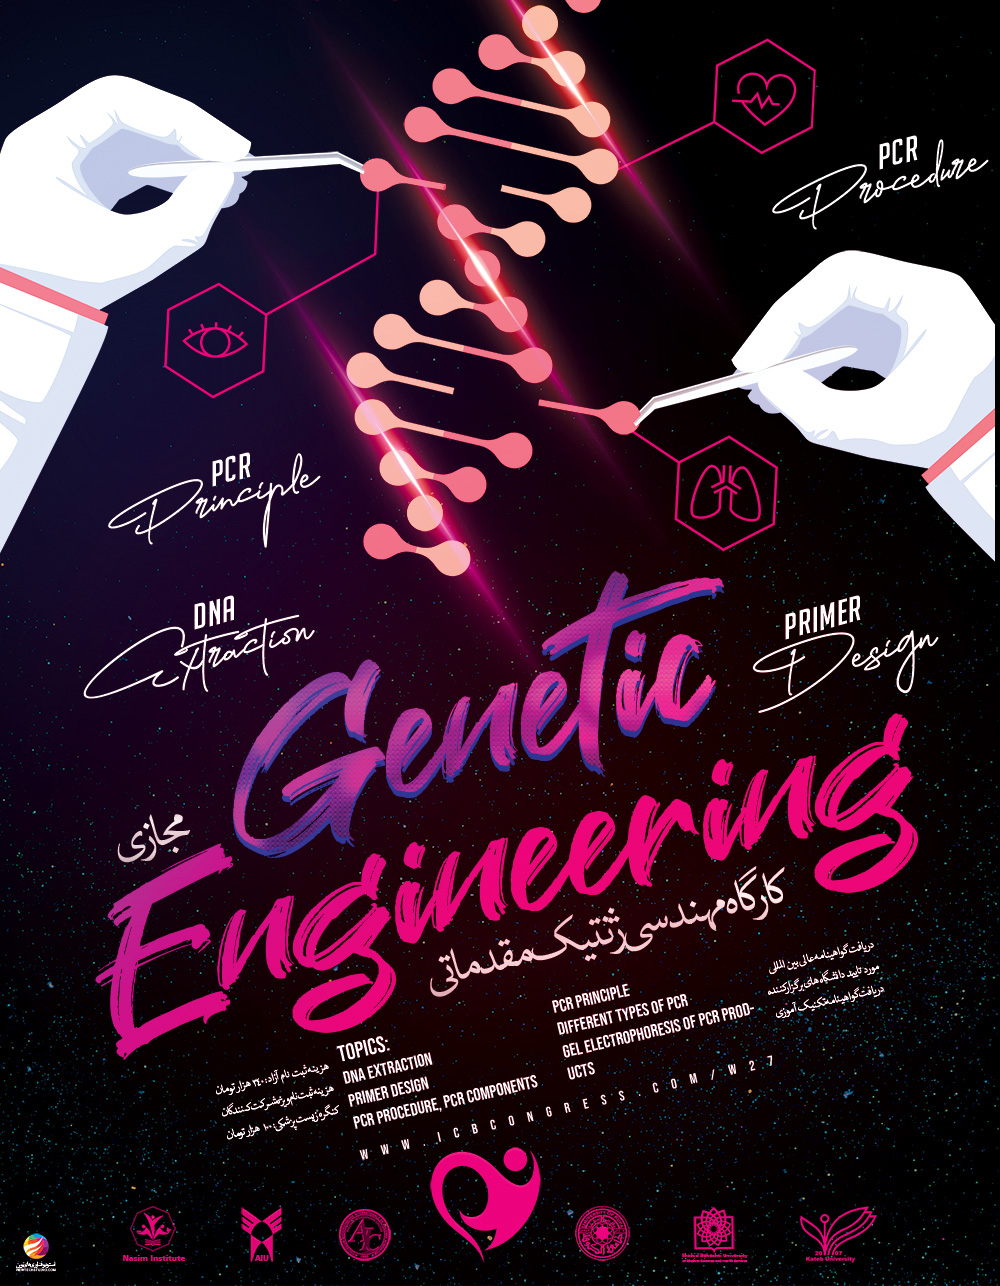 Genetic Engineering (Preliminary) Workshops